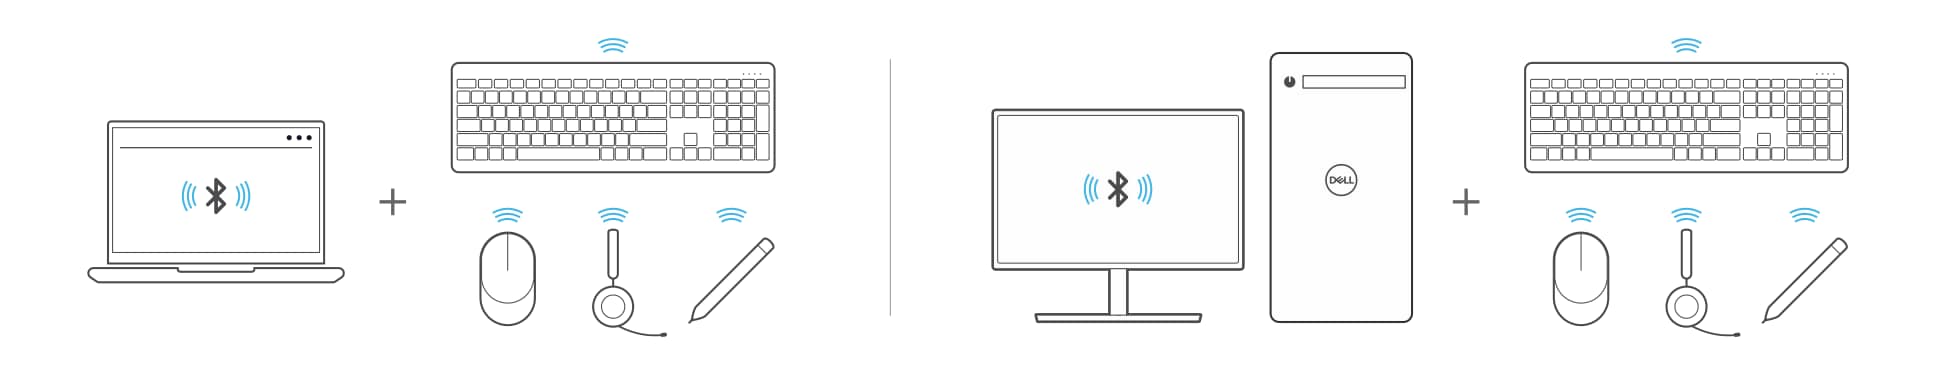 Laptop és asztali számítógép párosítása Bluetooth-eszközzel, például billentyűzettel, egérrel, fejhallgatóval vagy tollal.